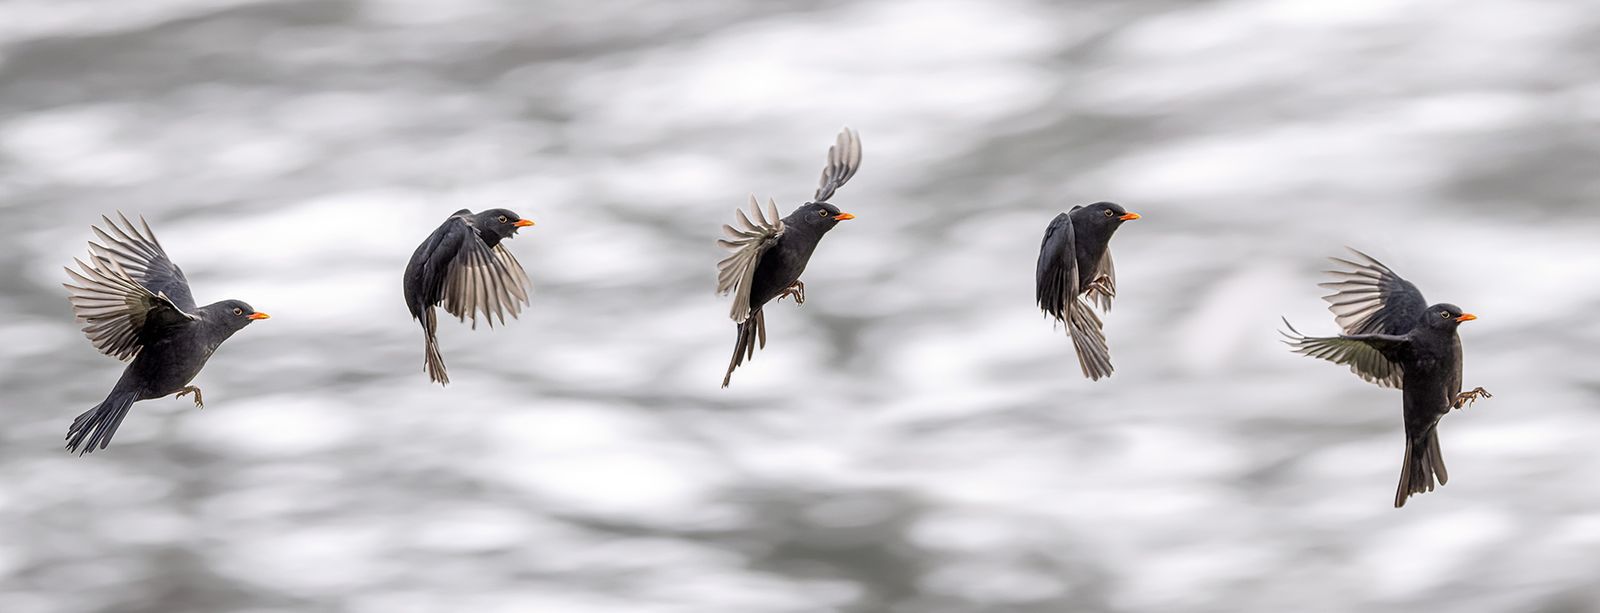 Blackbird in flight